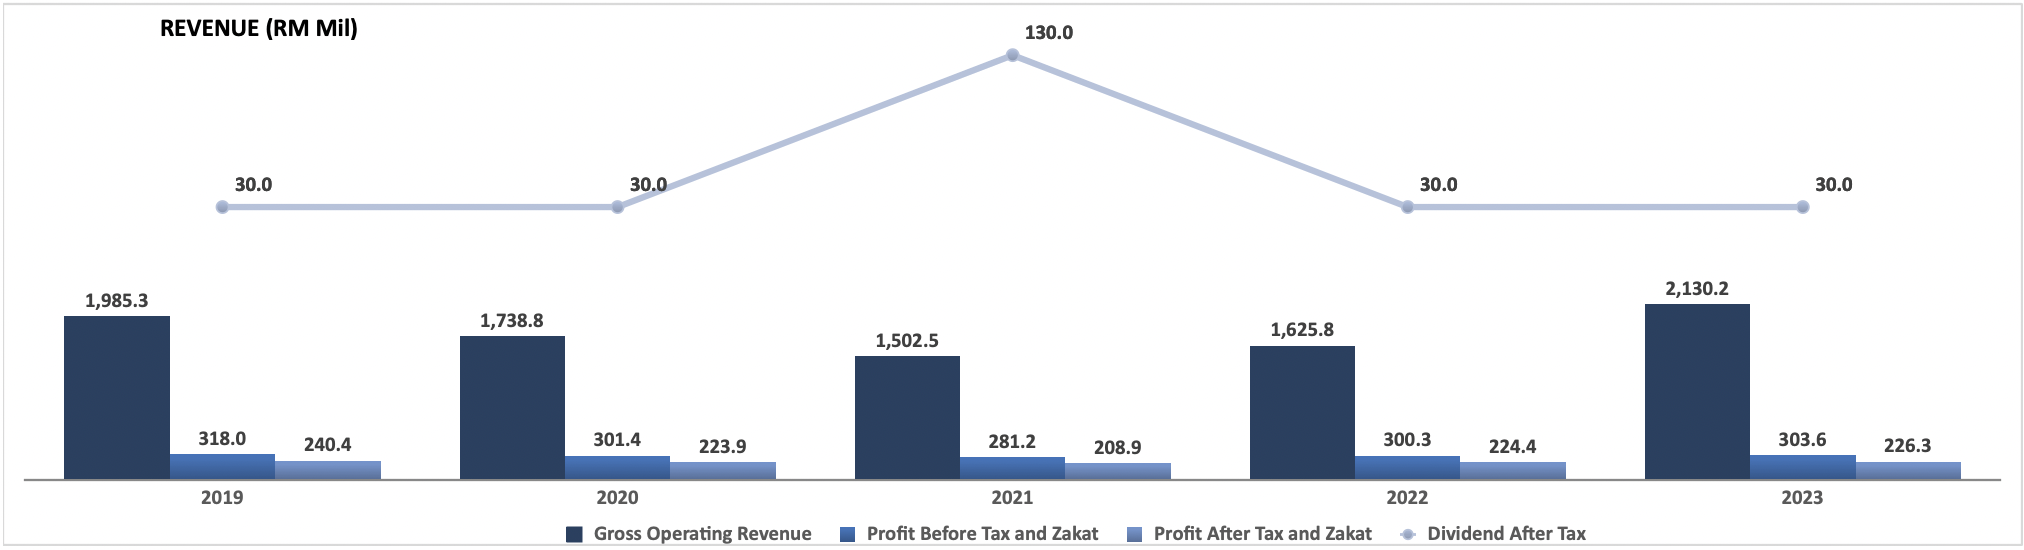 CB-revenue-2023.png